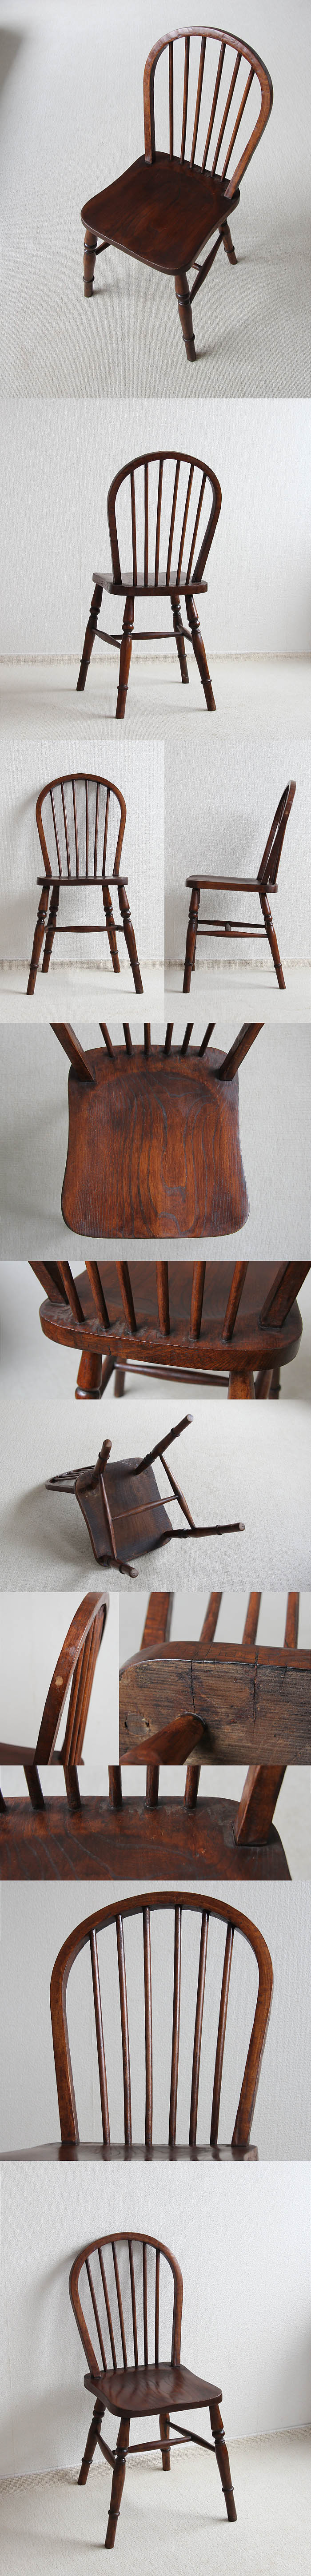 イギリス アンティーク フープバックチェア 木製椅子 家具 インテリア「一枚板座面」V-913